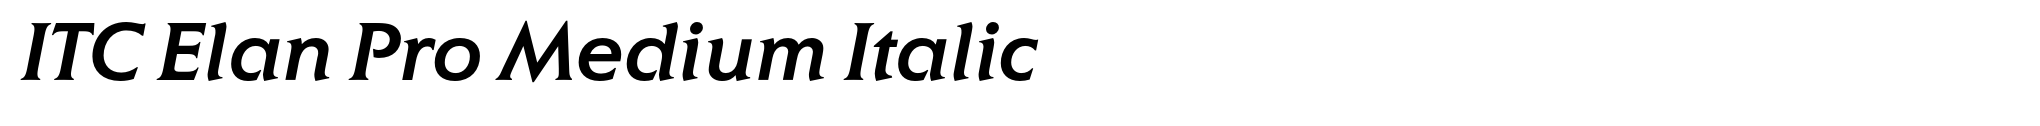 ITC Elan Pro Medium Italic image